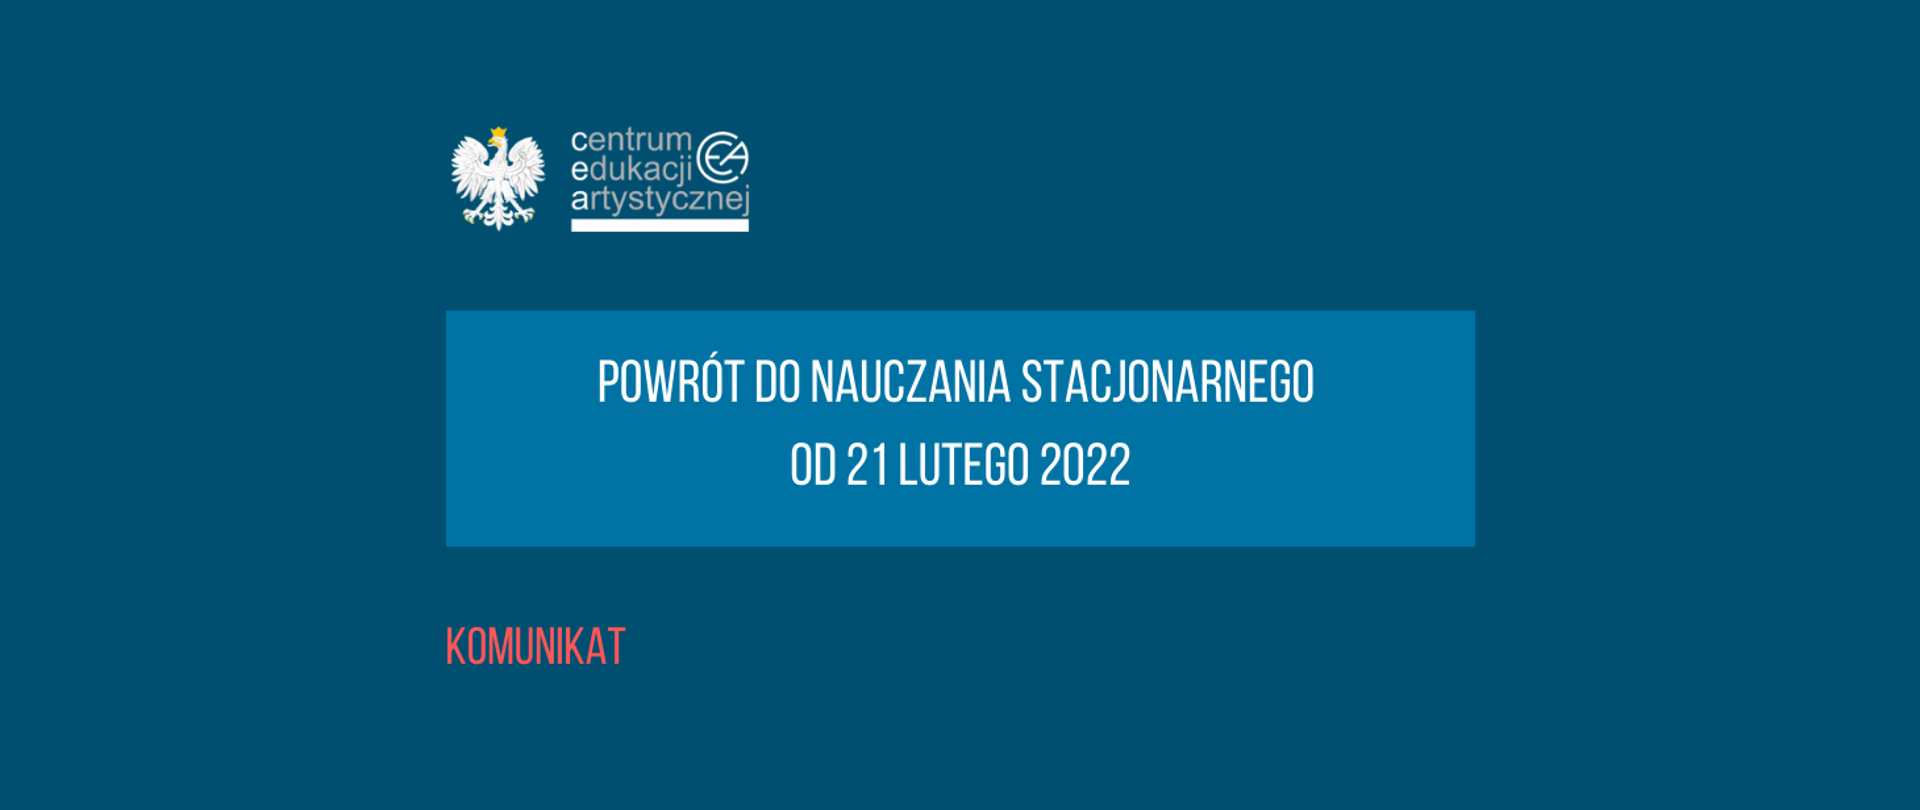 Grafika na niebieskim tle z tekstem "Komunikat powrót do nauczania stacjonarnego od 21 lutego 2022" i logo CEA z orzełkiem